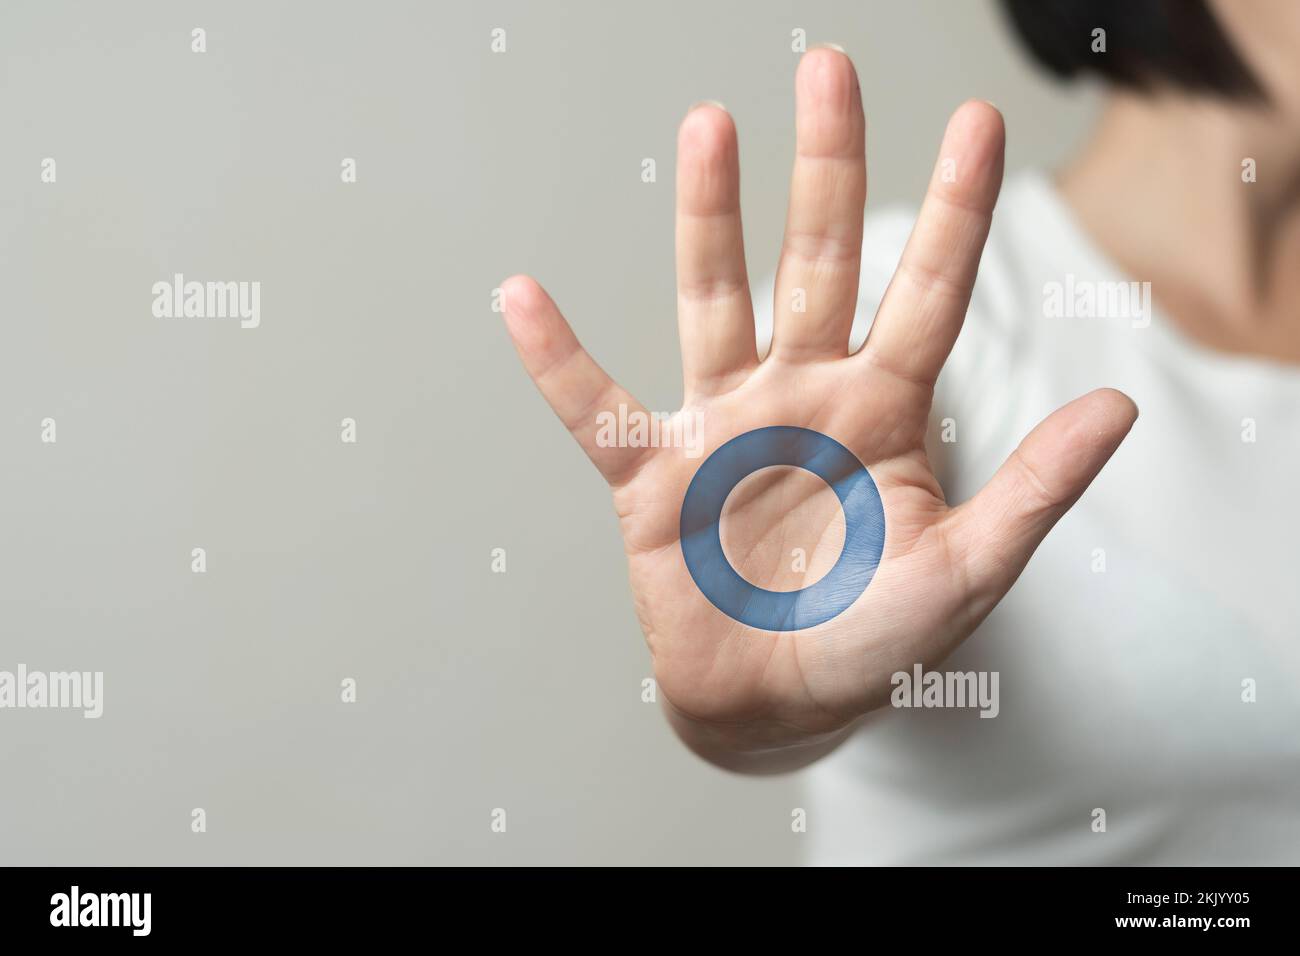 Weltdiabetes-Tag-Konzept: Frau zeigt eine Hand mit blauem Kreis darauf Stockfoto